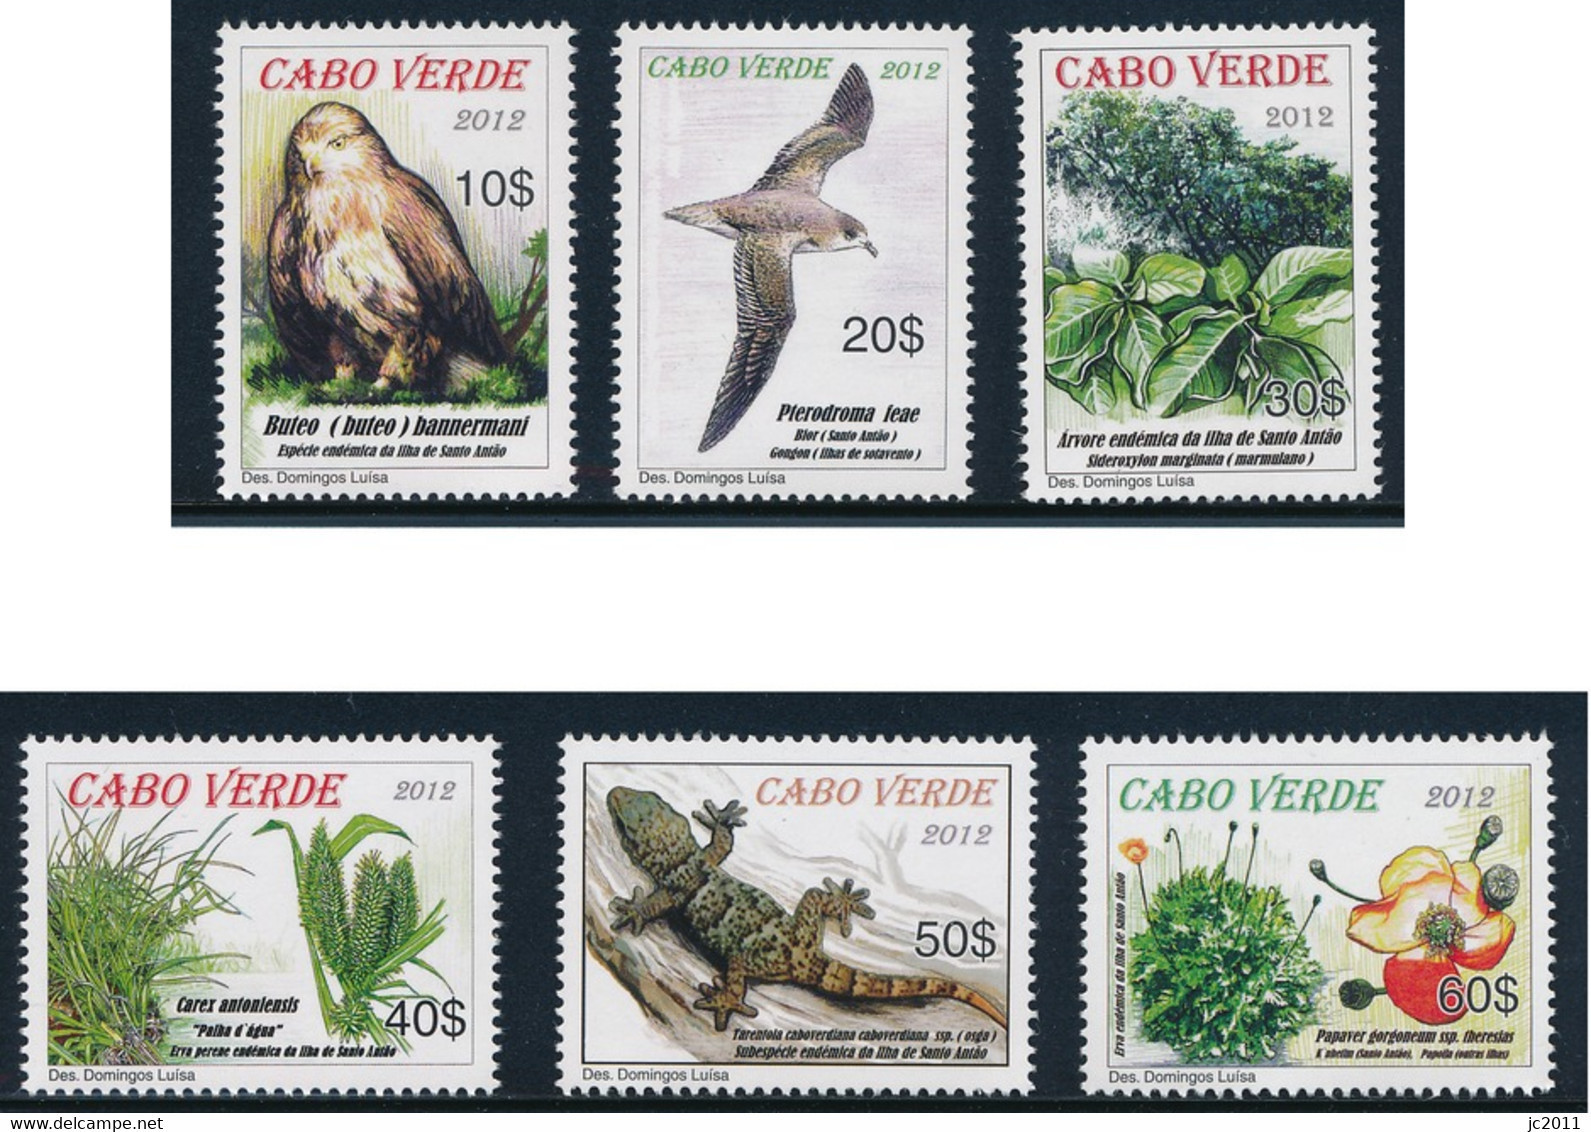 Cabo Verde - 2012 - Protected Areas / Santo Antão - MNH - Cape Verde